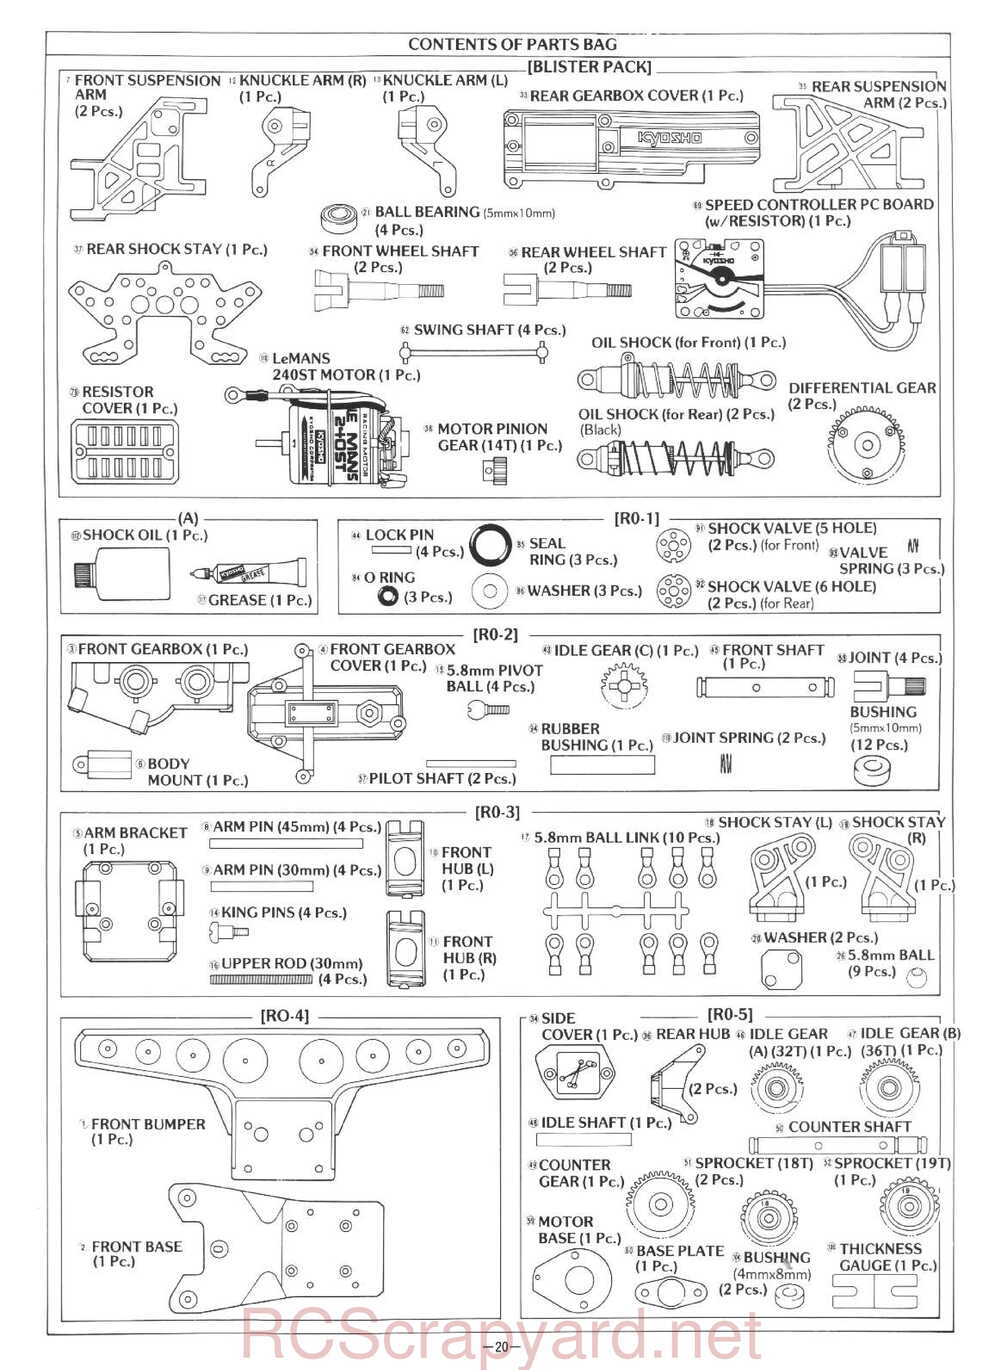 Kyosho - 3101 - Rocky - Manual - Page 20